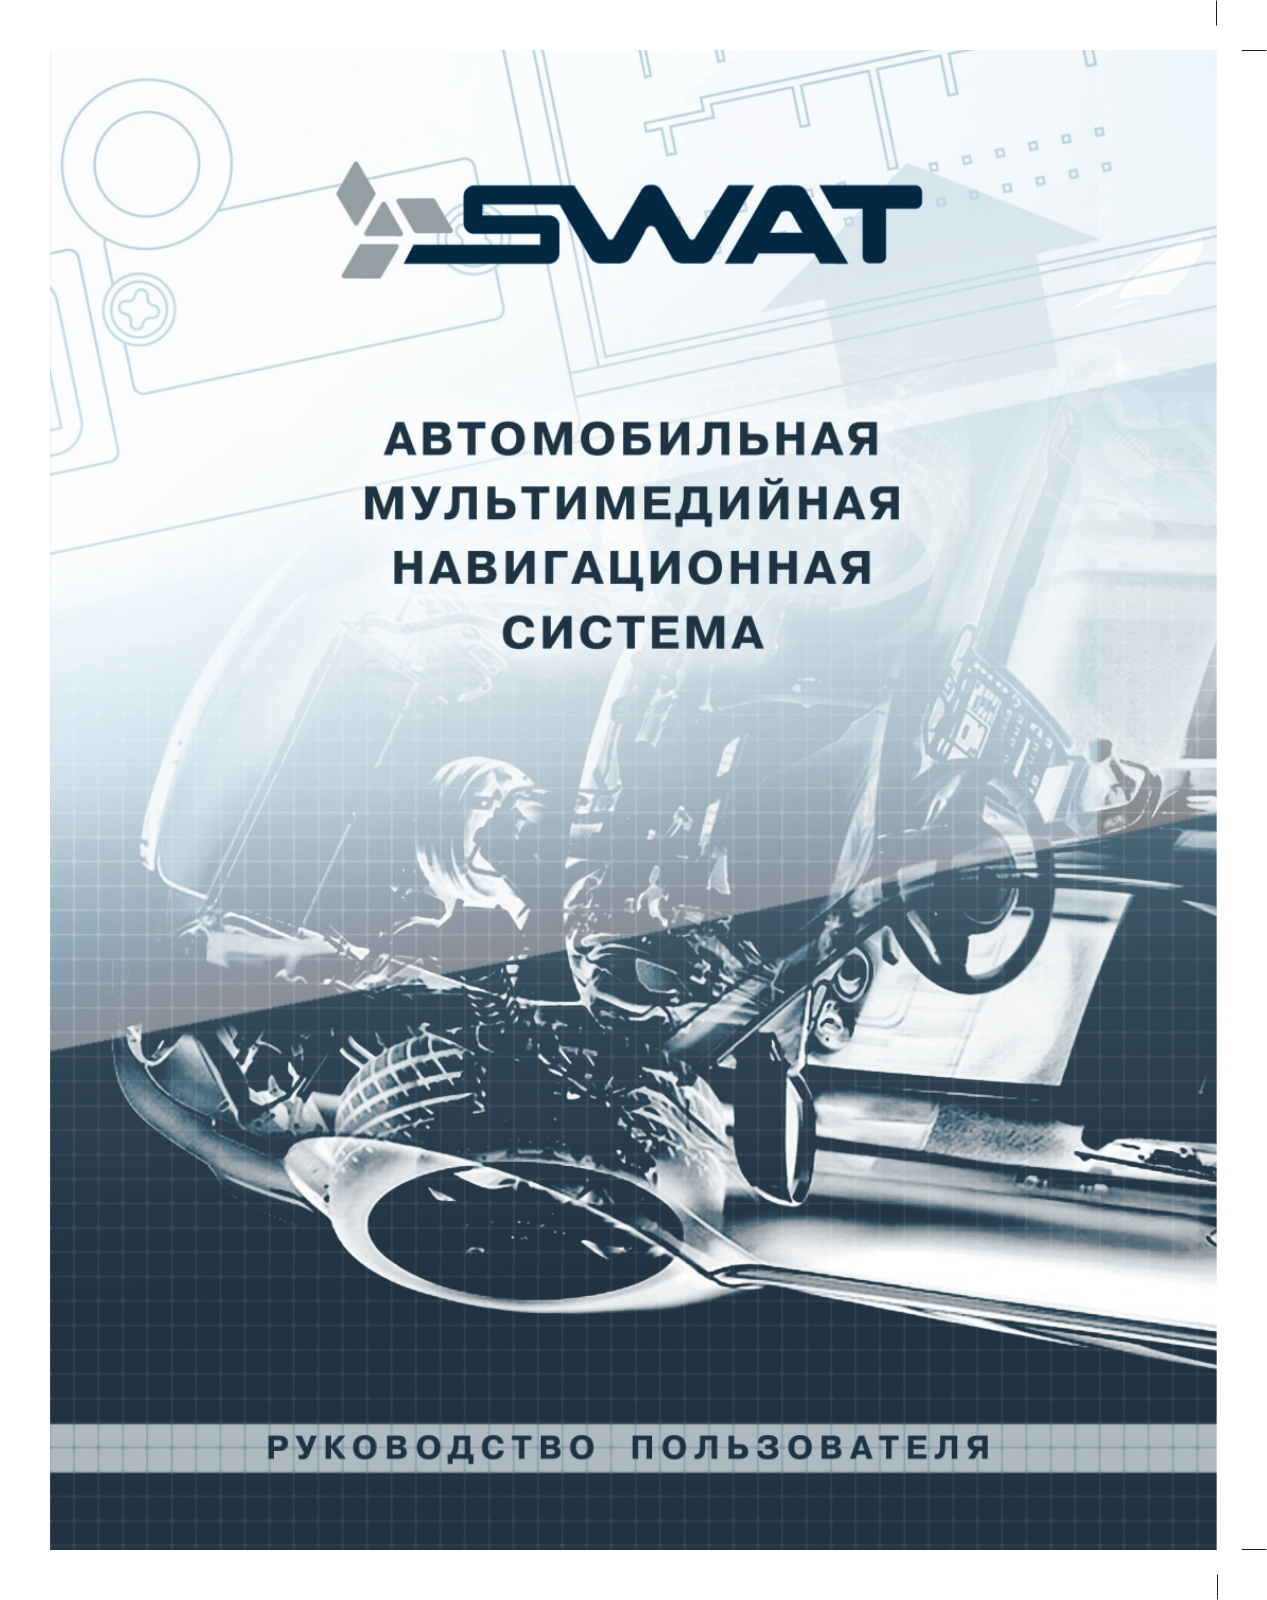 Swat SHR-3033, SHR-4032, SHR-5033, SHR-9032, SHR-6031 User Manual